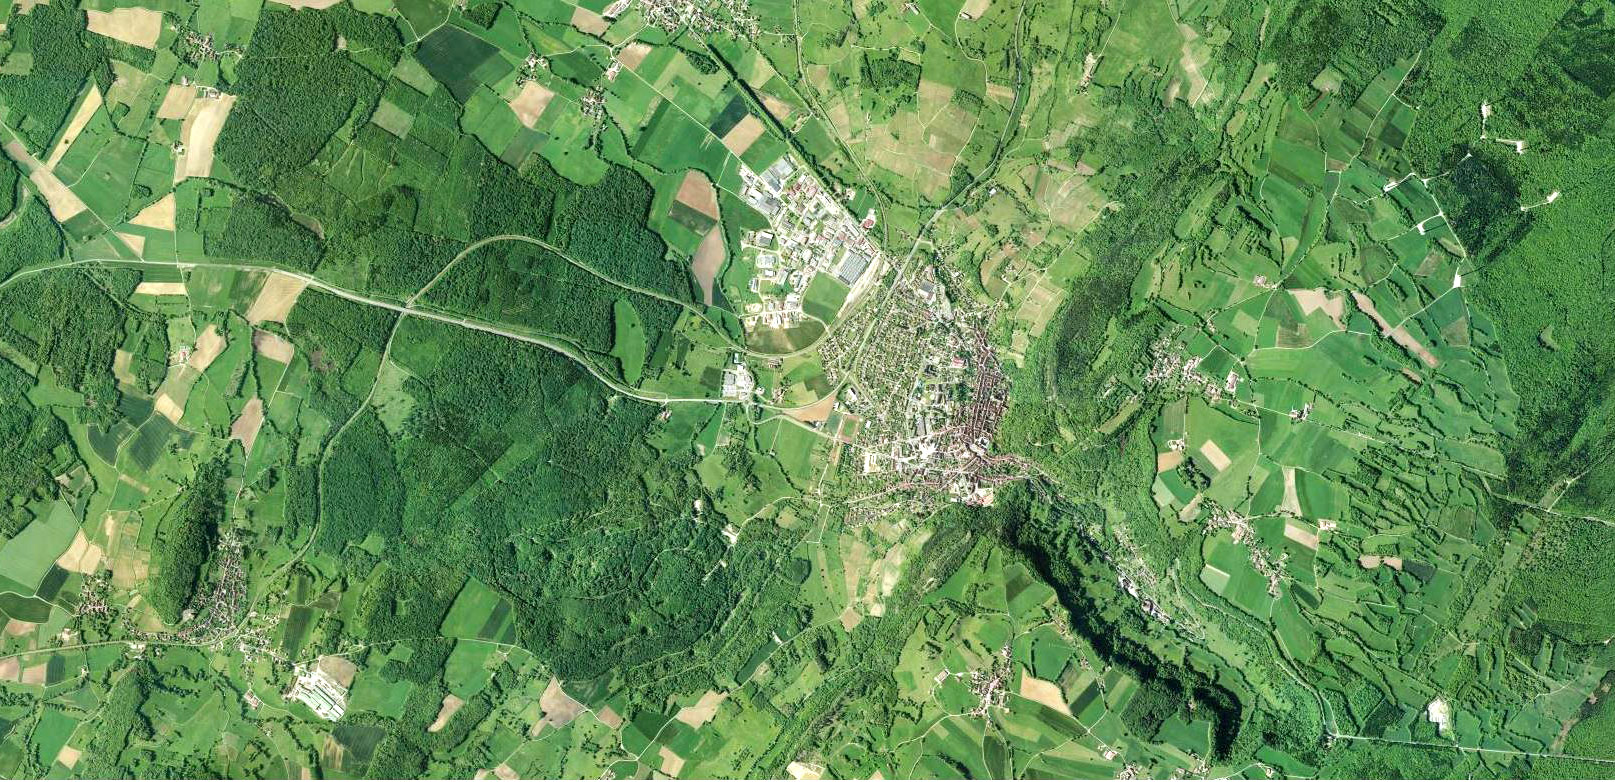 2018 : La zone d'activité s'est largement développée en entrée de ville de Poligny. En entrée de reculée, la forêt est descendue en lisière urbaine. Au contraire, sur les zones viticoles, la frontière entre vignes et forêt se maintient face à la pression foncière de l'AOP Vins du Jura.